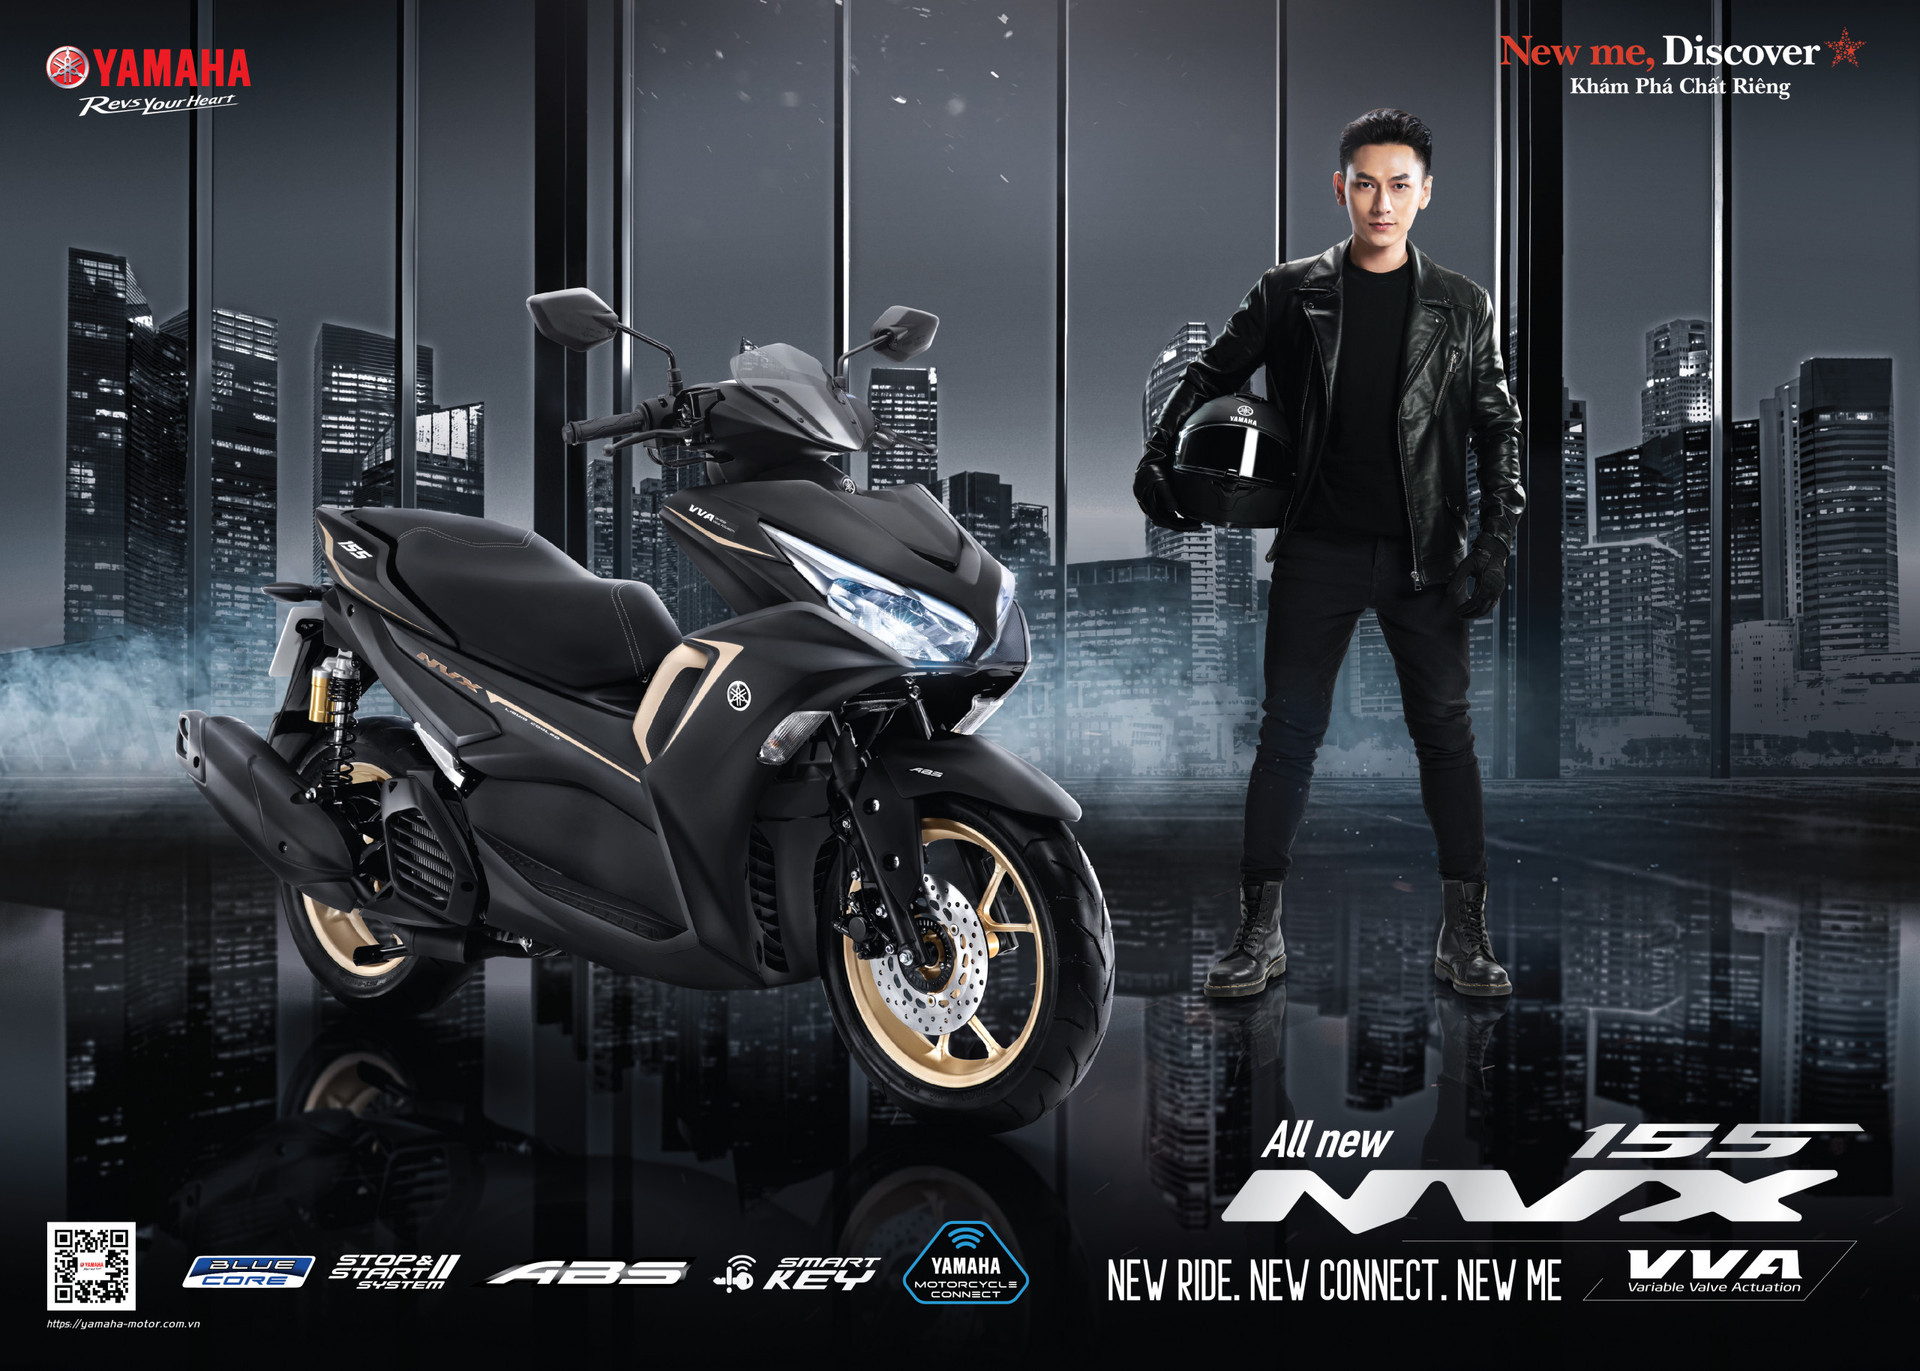 Bảng giá xe máy Yamaha NVX 155 2022 mới nhất ngày 28/9/2022